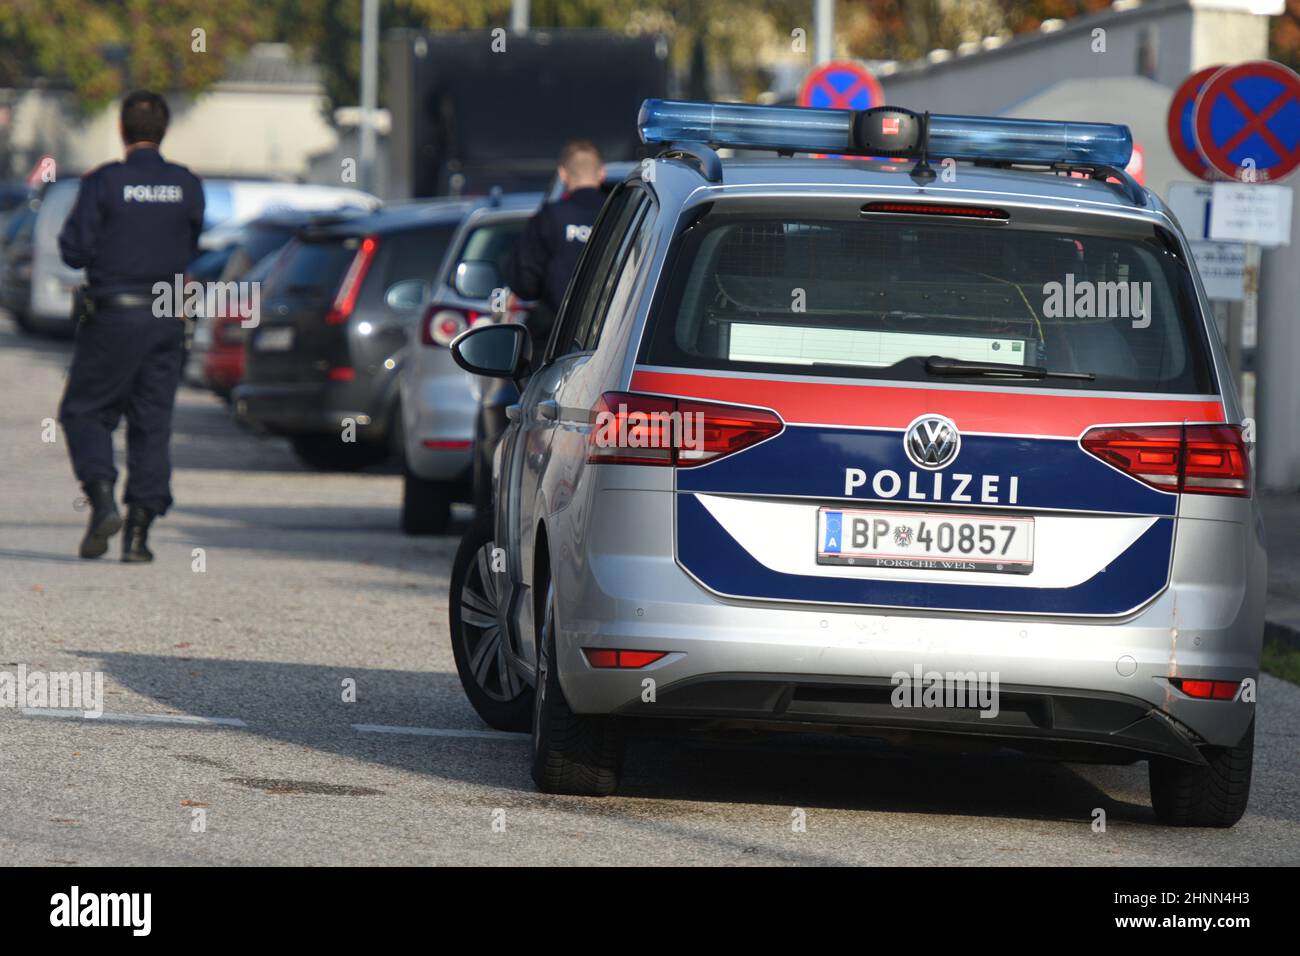 Polizeikontrolle in Wels, Oberösterreich, Österreich, Europa - Police control in Wels, Upper Austria, Austria, Europe Stock Photo